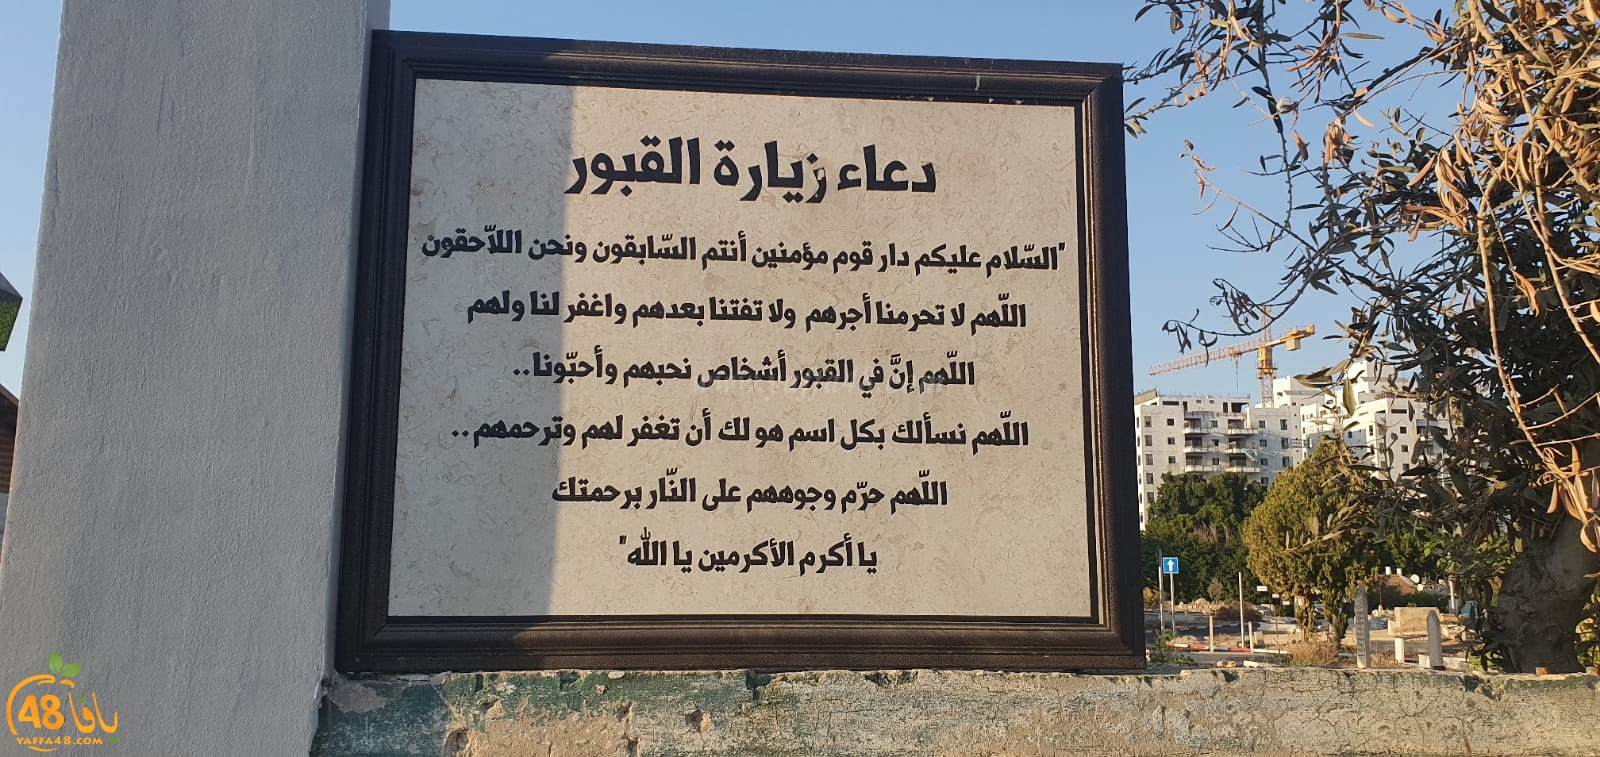  فيديو: تشييع جثمان الحاجة عائشة أبو سيف أم خميس في مدينة الرملة